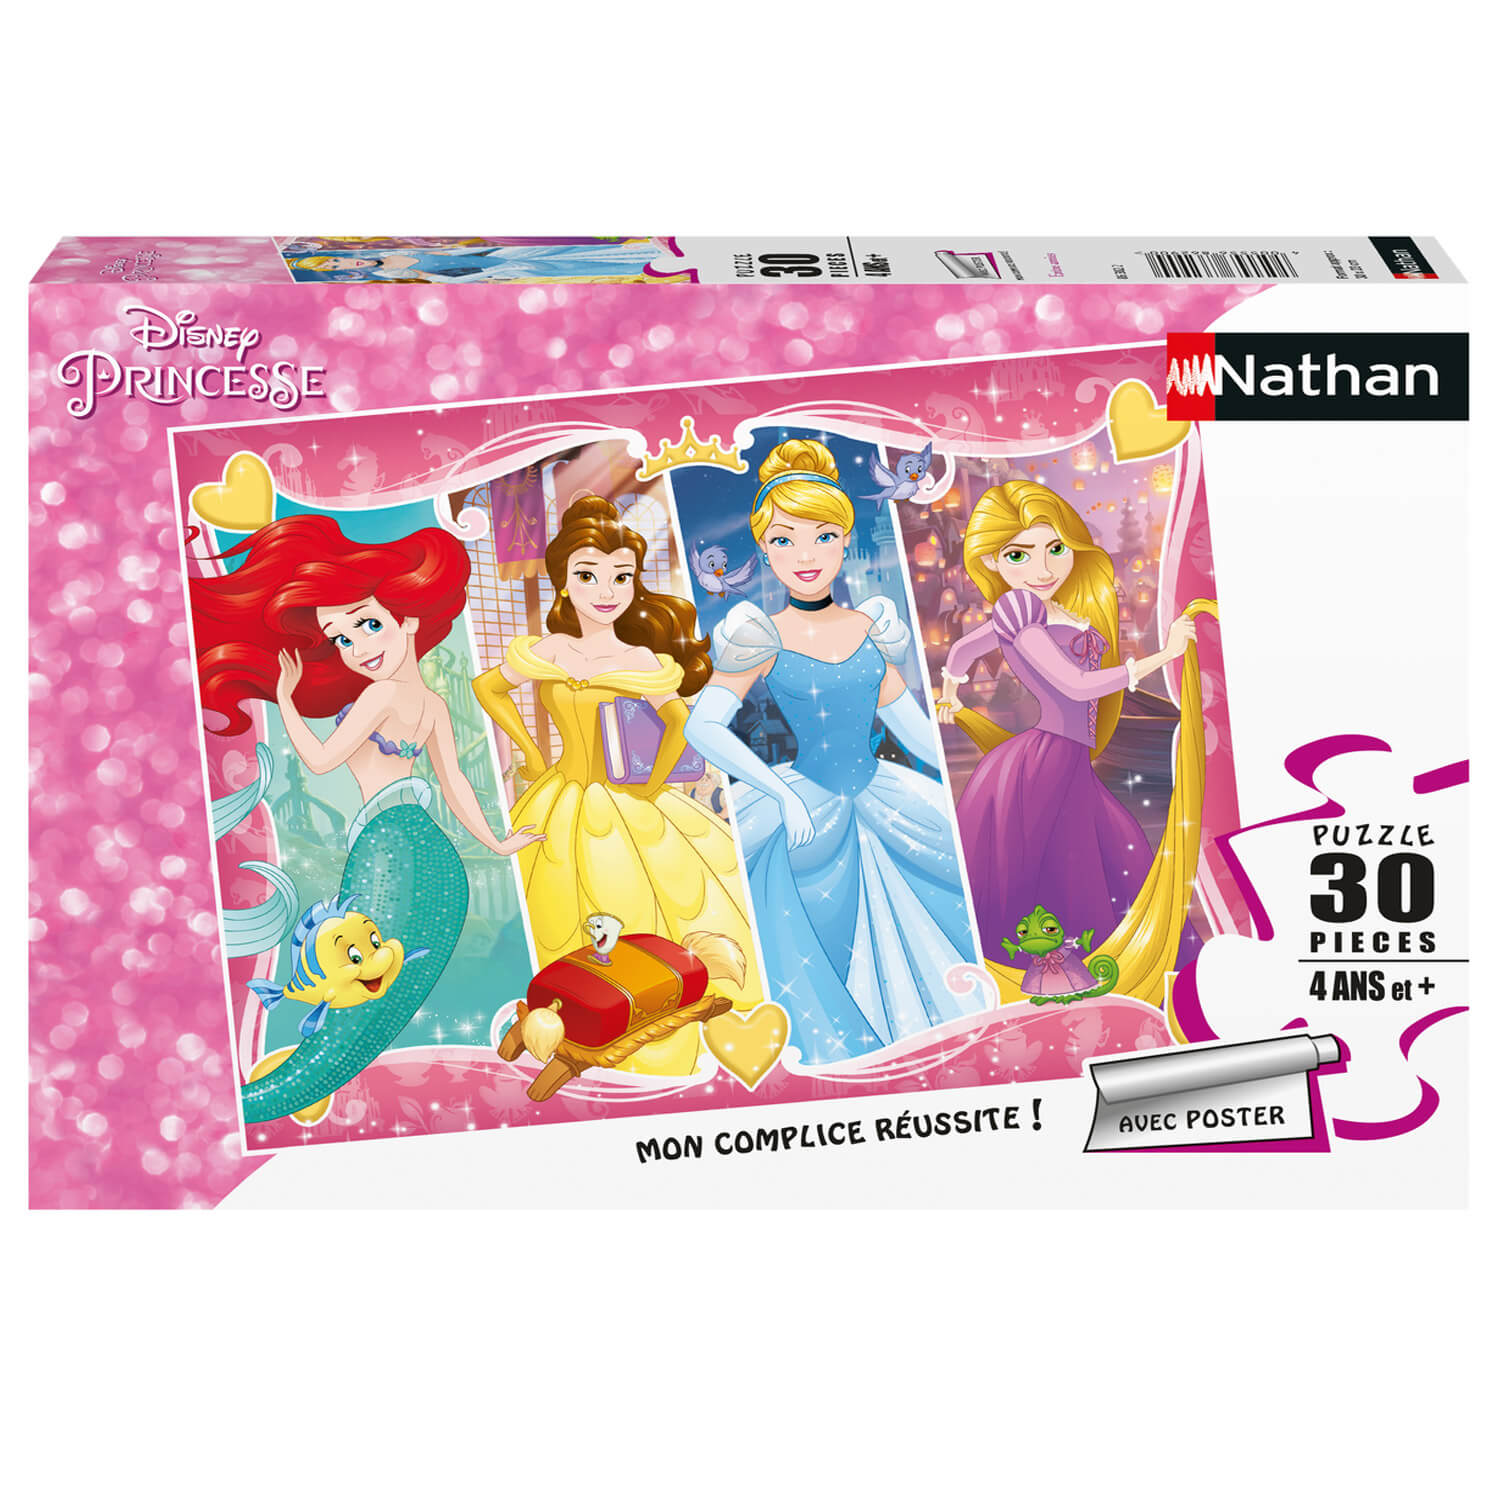 Nathan puzzles - Puzzle 30 pièces, Les princesses à ombrelle/Disney Princess